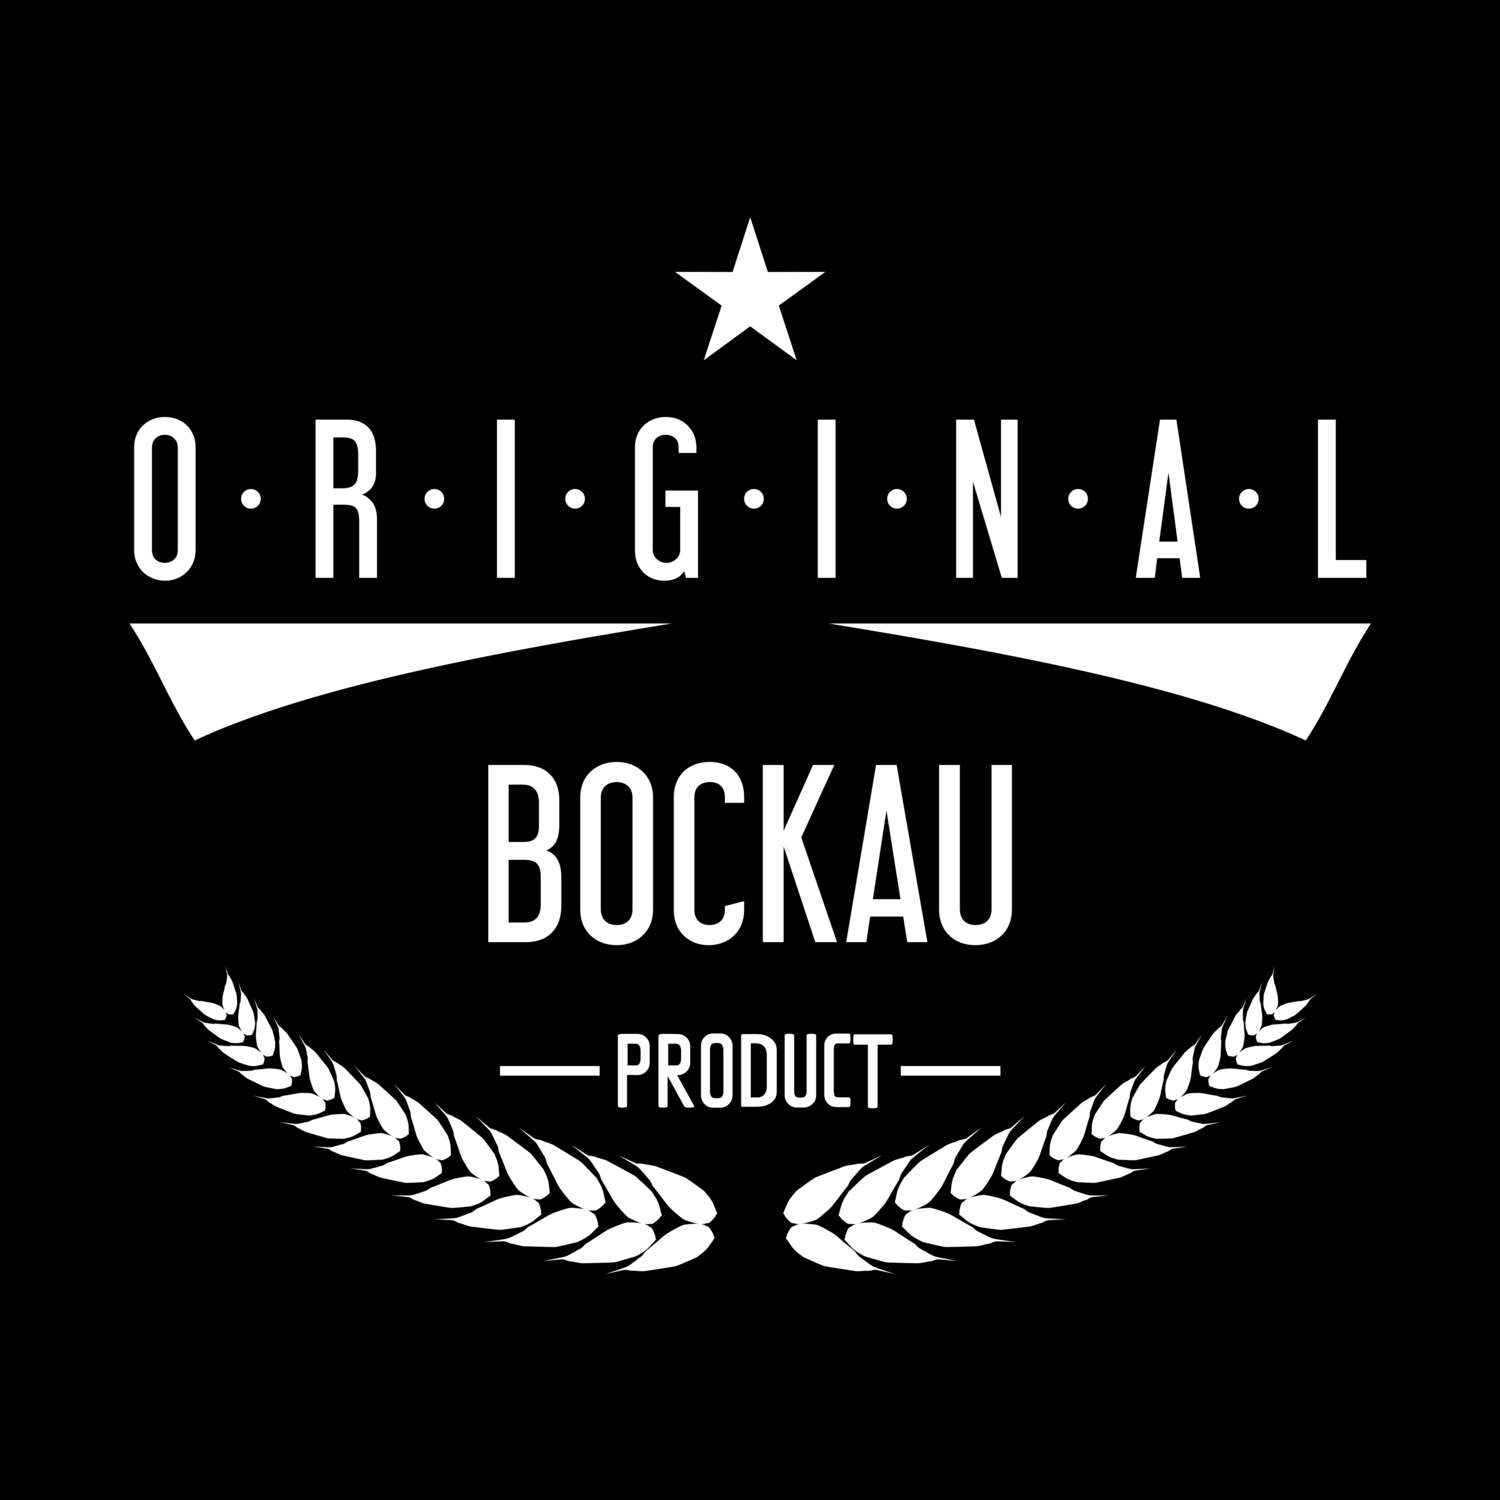 Bockau T-Shirt »Original Product«